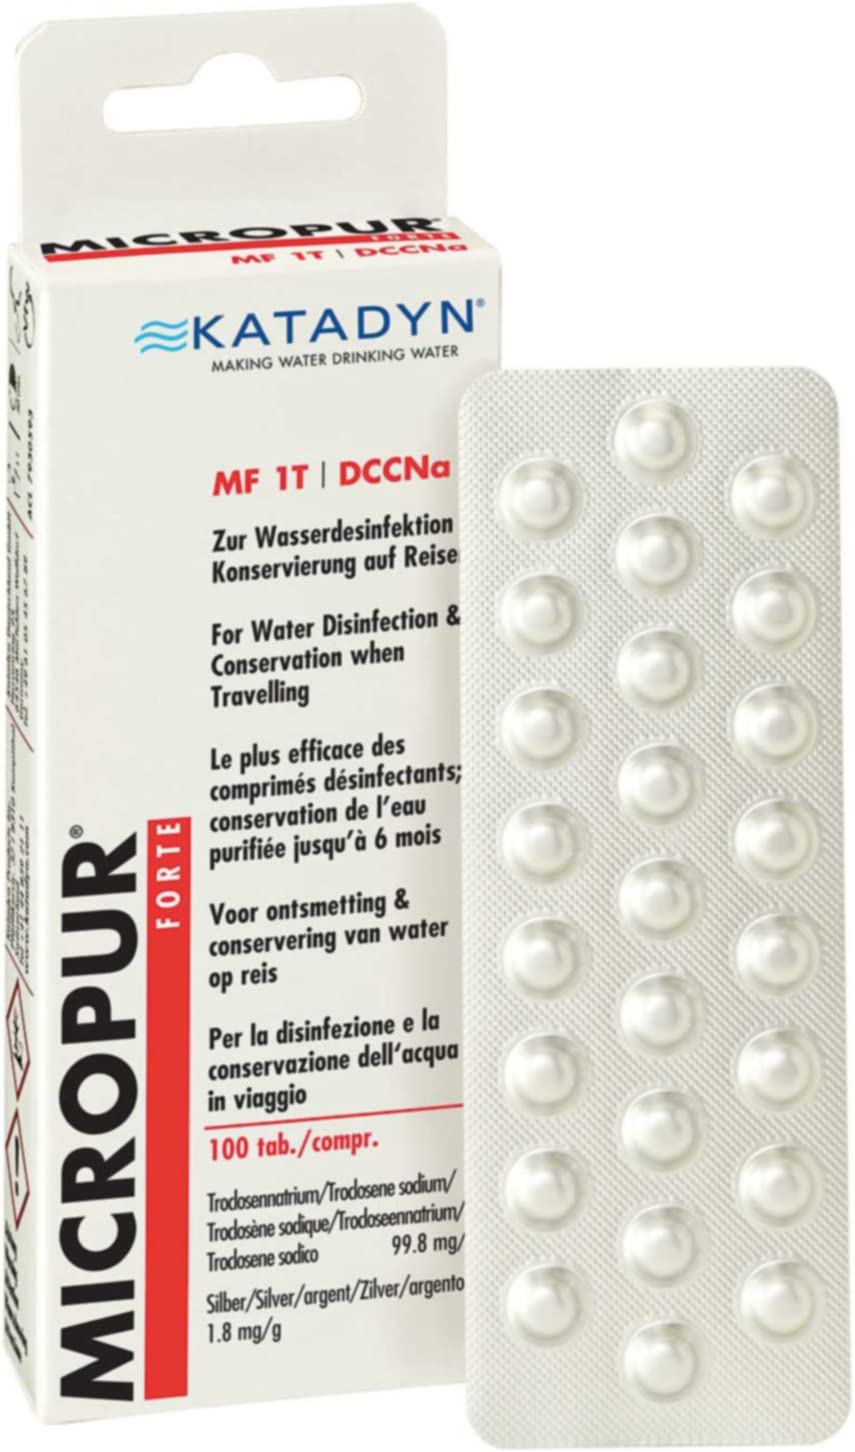 Tabletten zur Wasserdesinfektion - 100 Tabletten